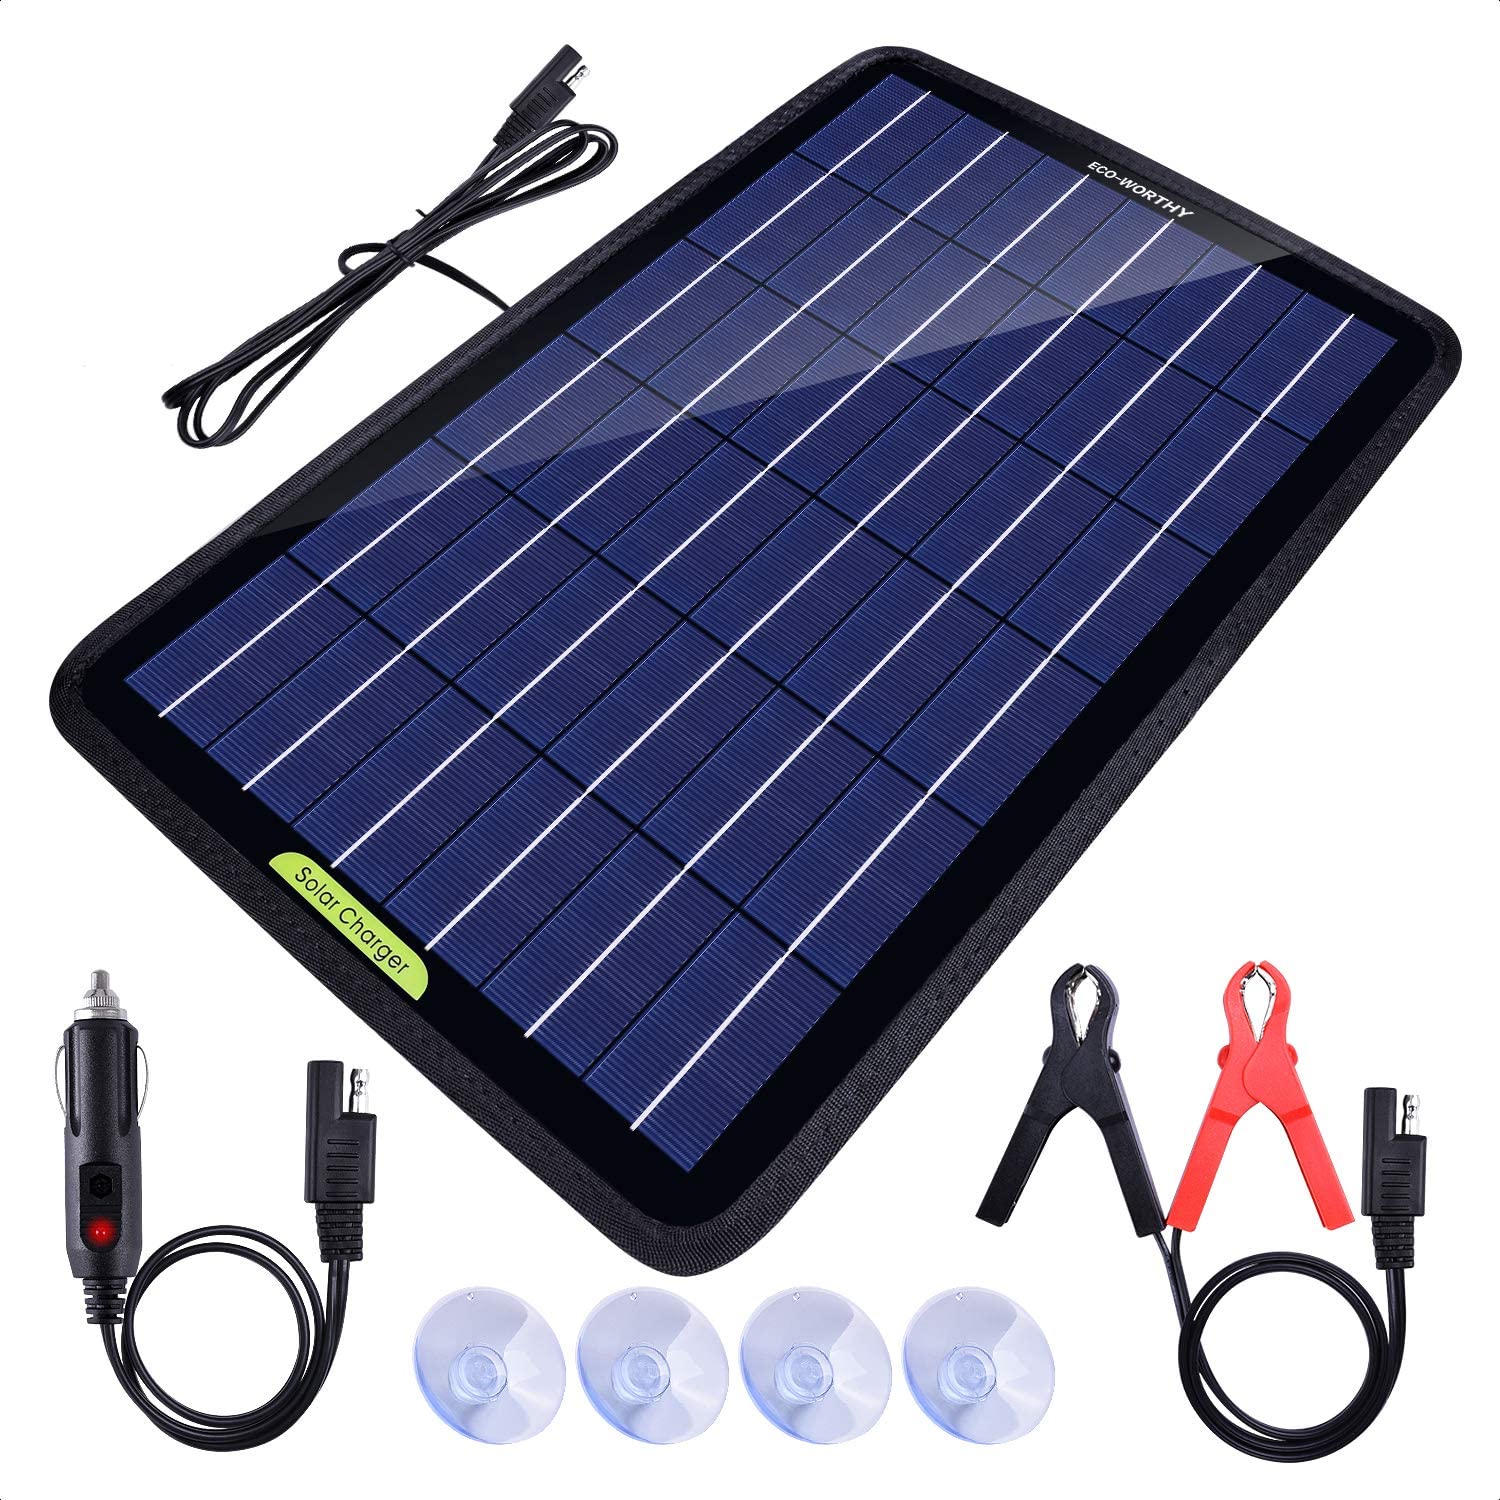 Chargeur solaire portable 5W 10W pour batteries 12V en voiture et en bateau  | ECO-WORTHY